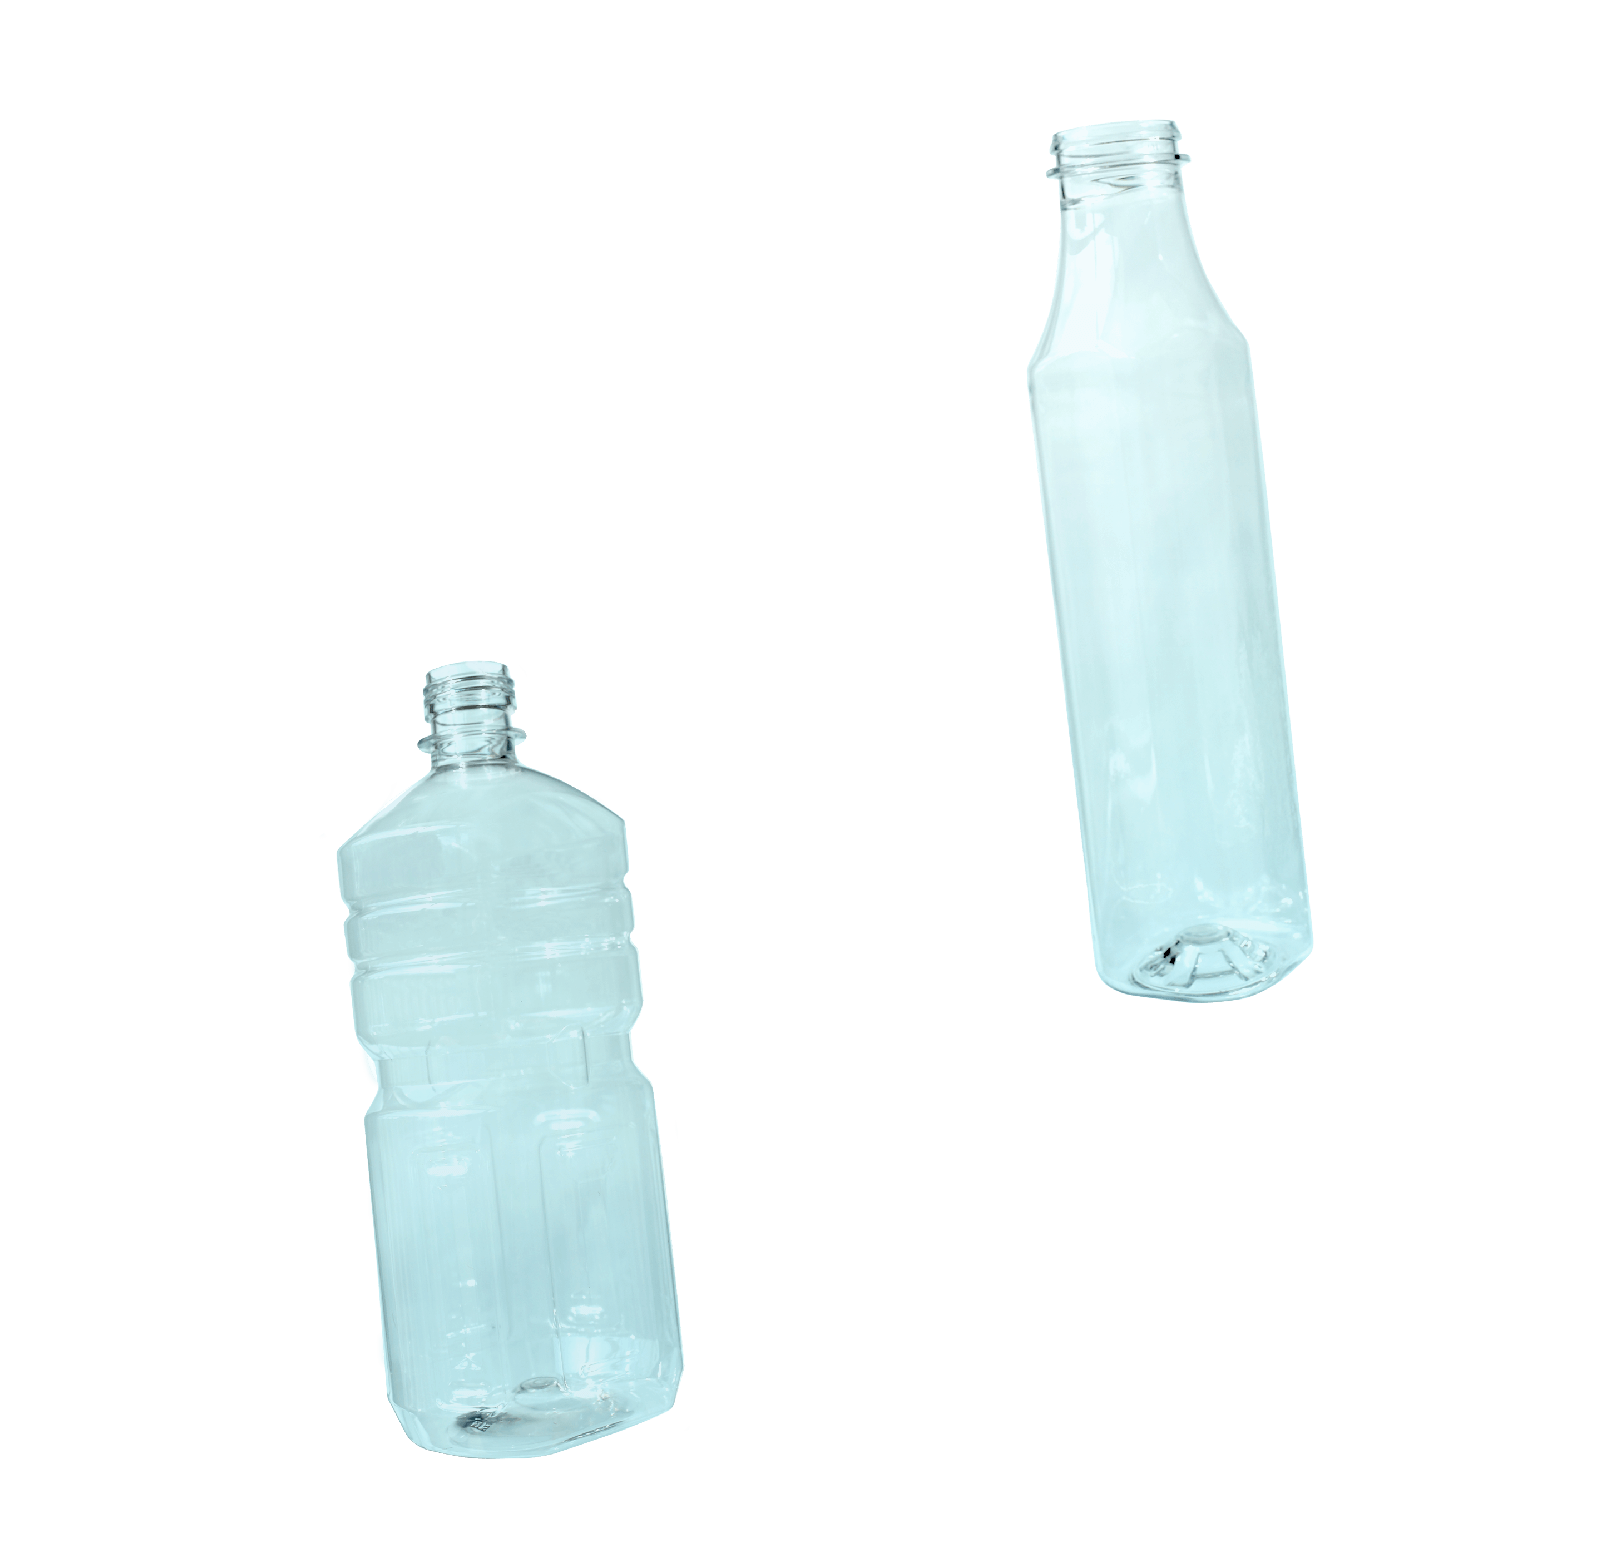 ペットボトル 耐熱ボトル 食品容器 キャップ 製品紹介